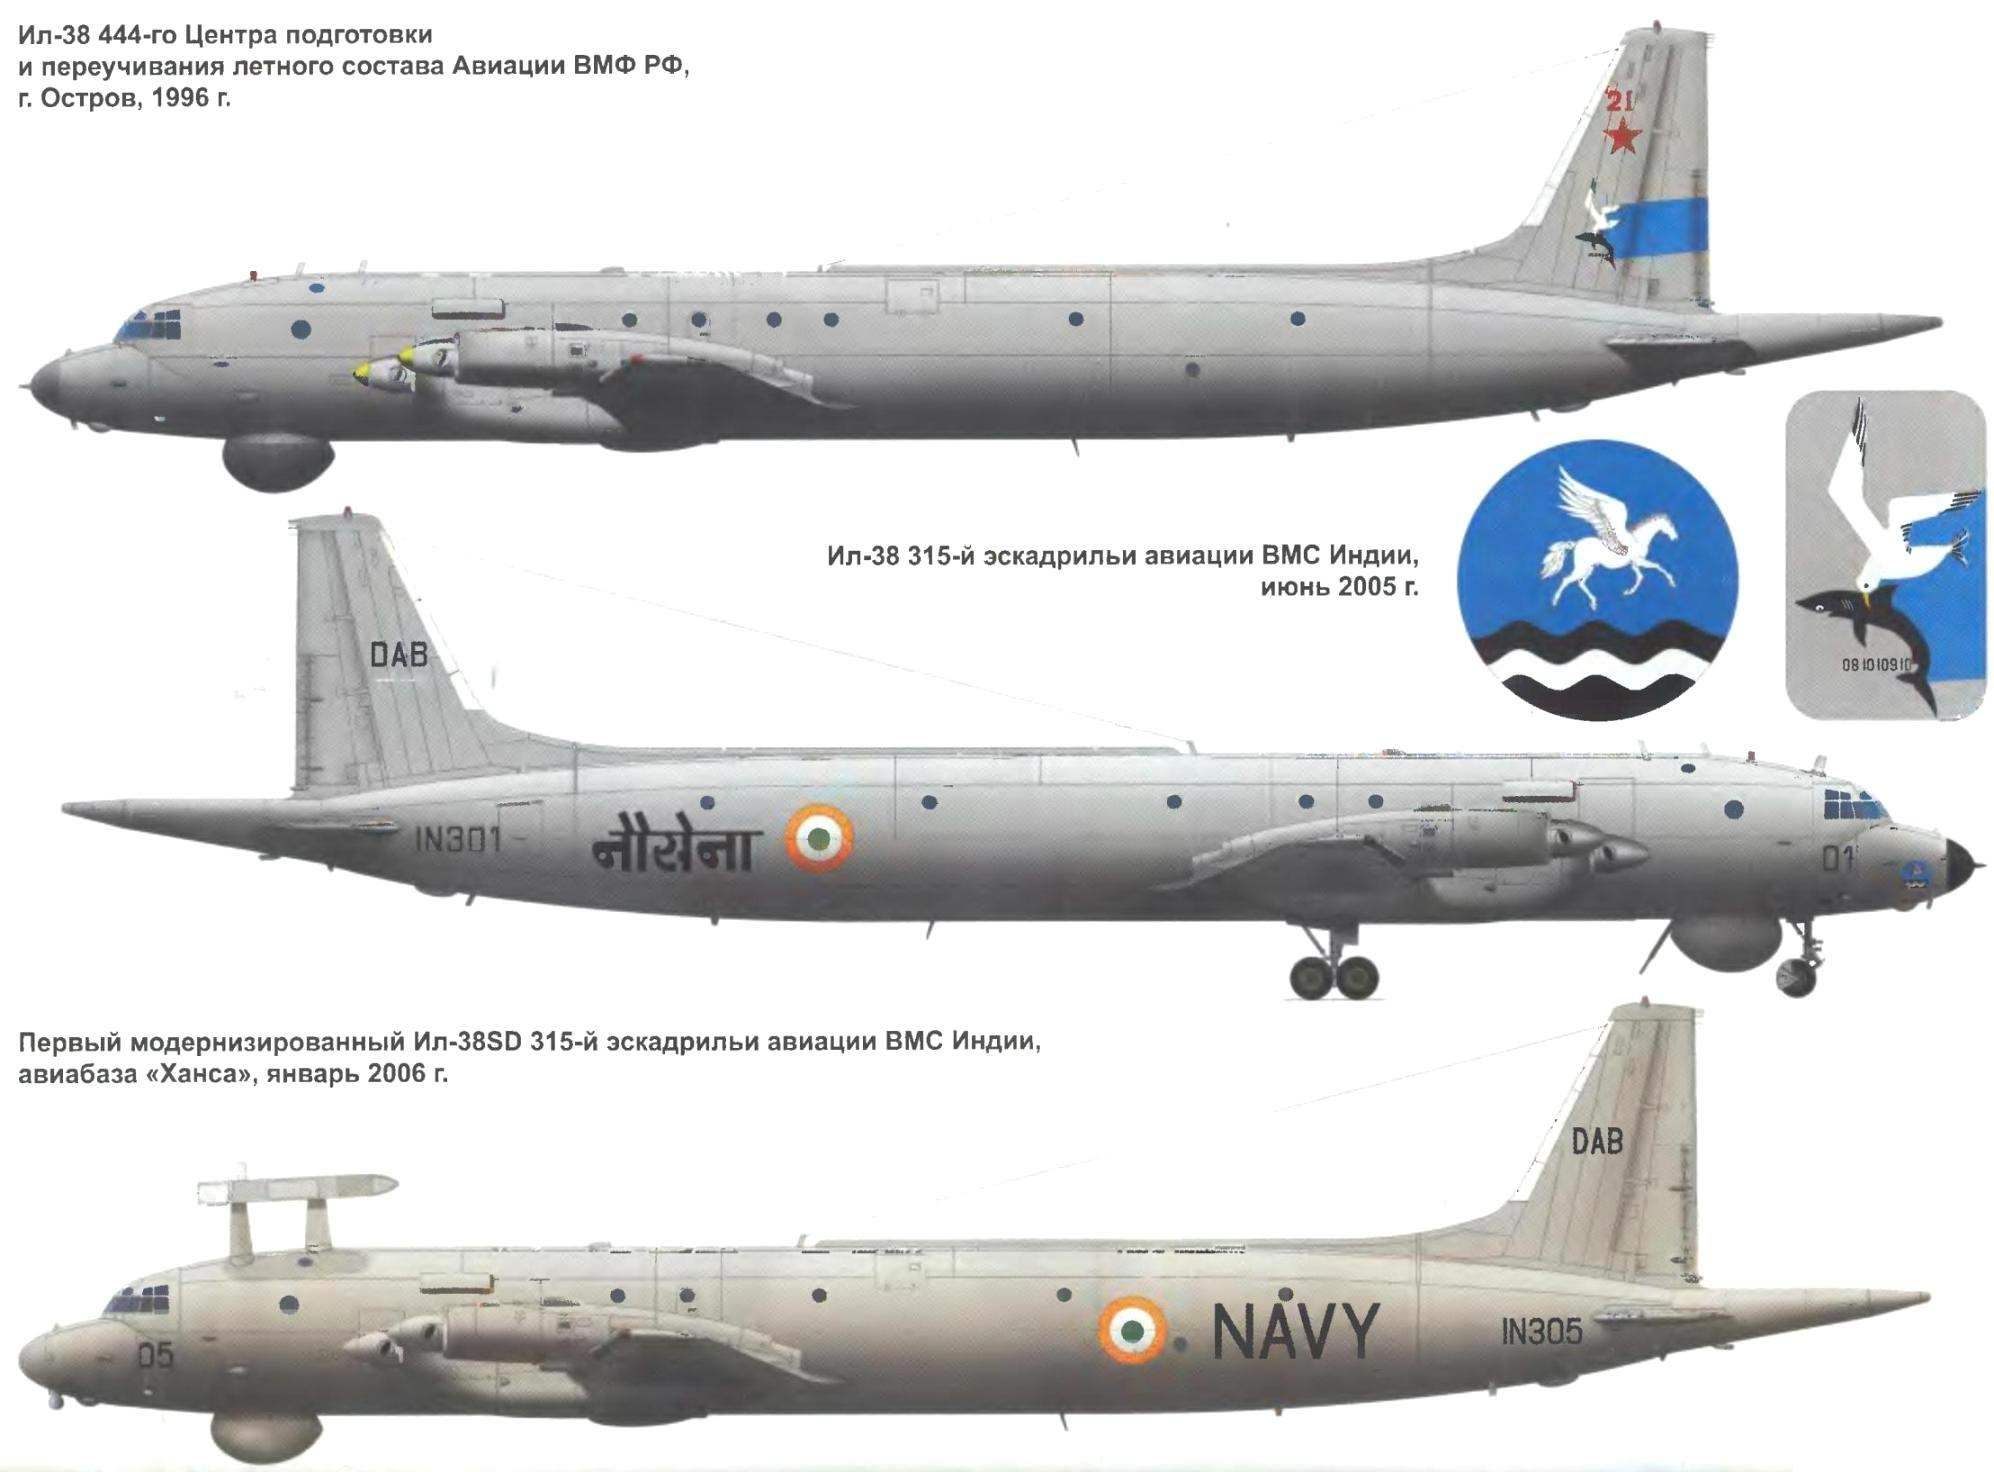 Ил-38 противолодочный самолет, общее описание, технические характеристики ттх и назначение, обзор двигателей и история создания